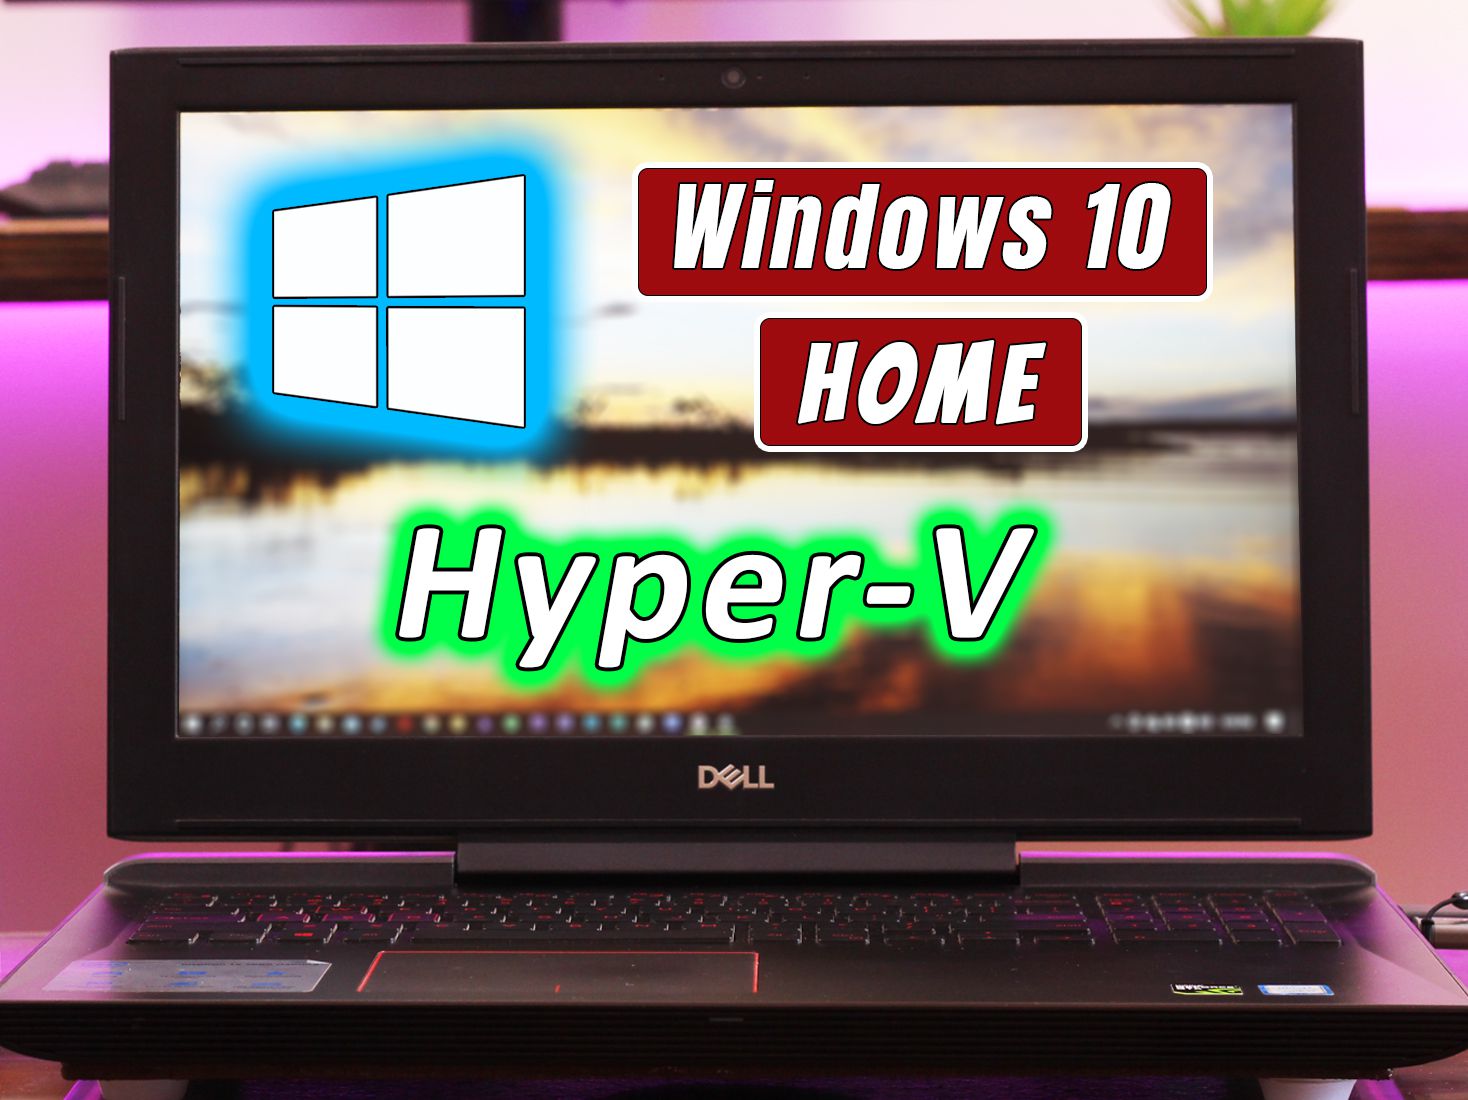 install hyper v on windows 10 home